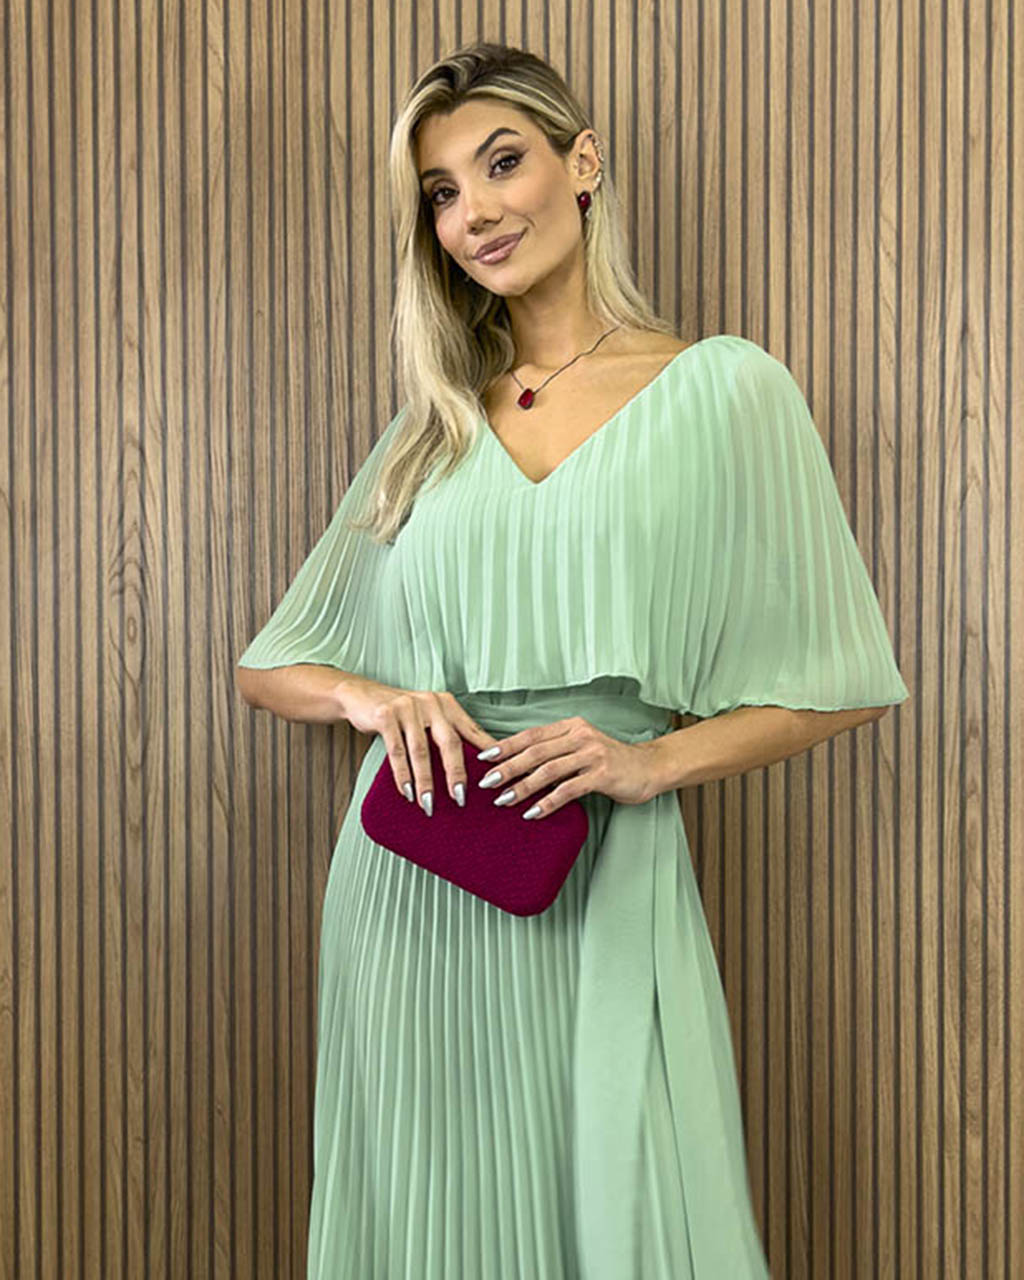 Vestido Longo Plissado Verde Angelica  - Empório NM